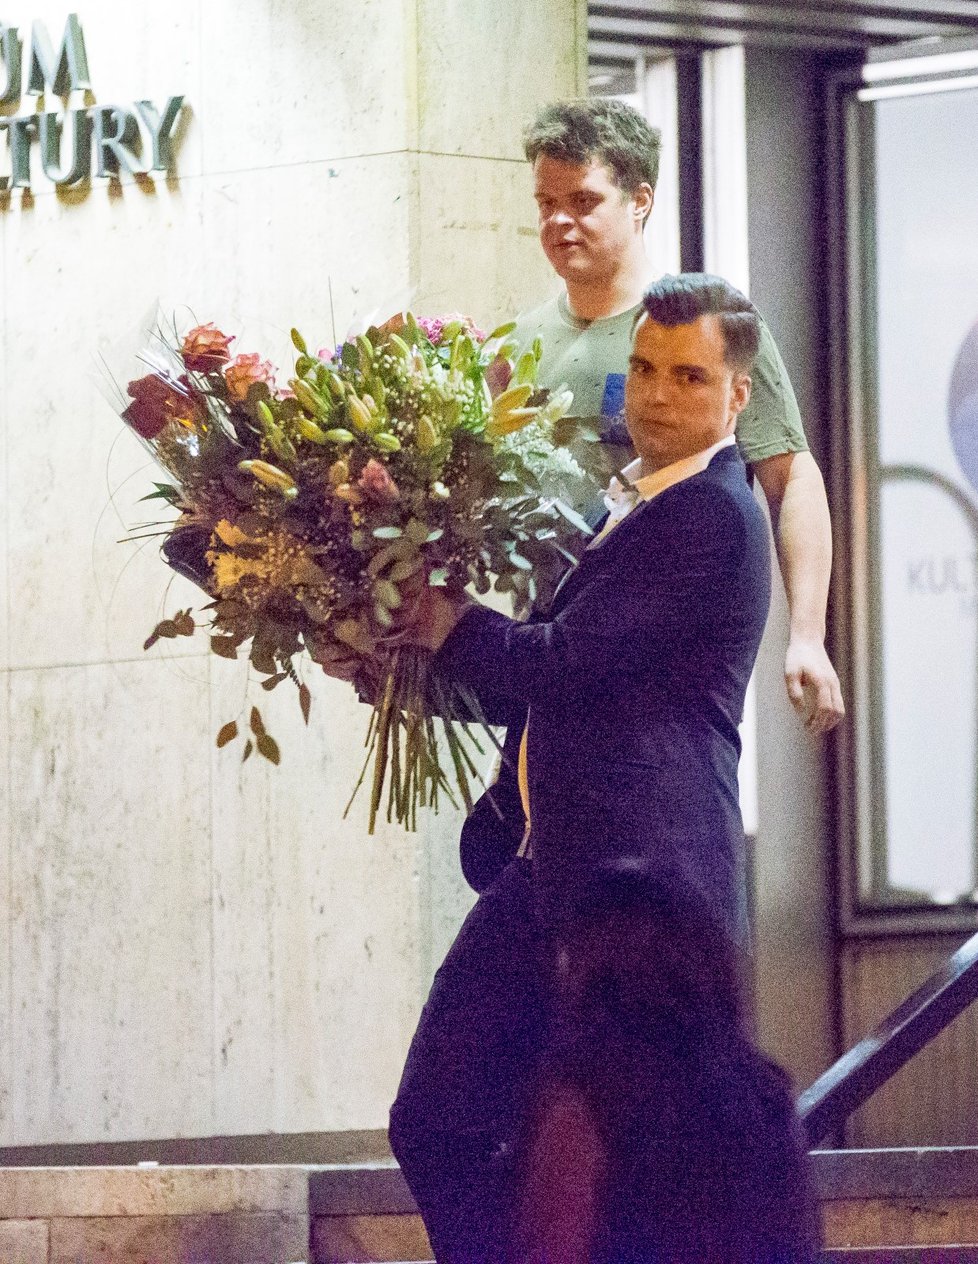 Známý mladík si počkal na Hanu Gregorovou před divadlem, pak jí pomáhal s květinami a dary až do domu, kde herečka bydlí.